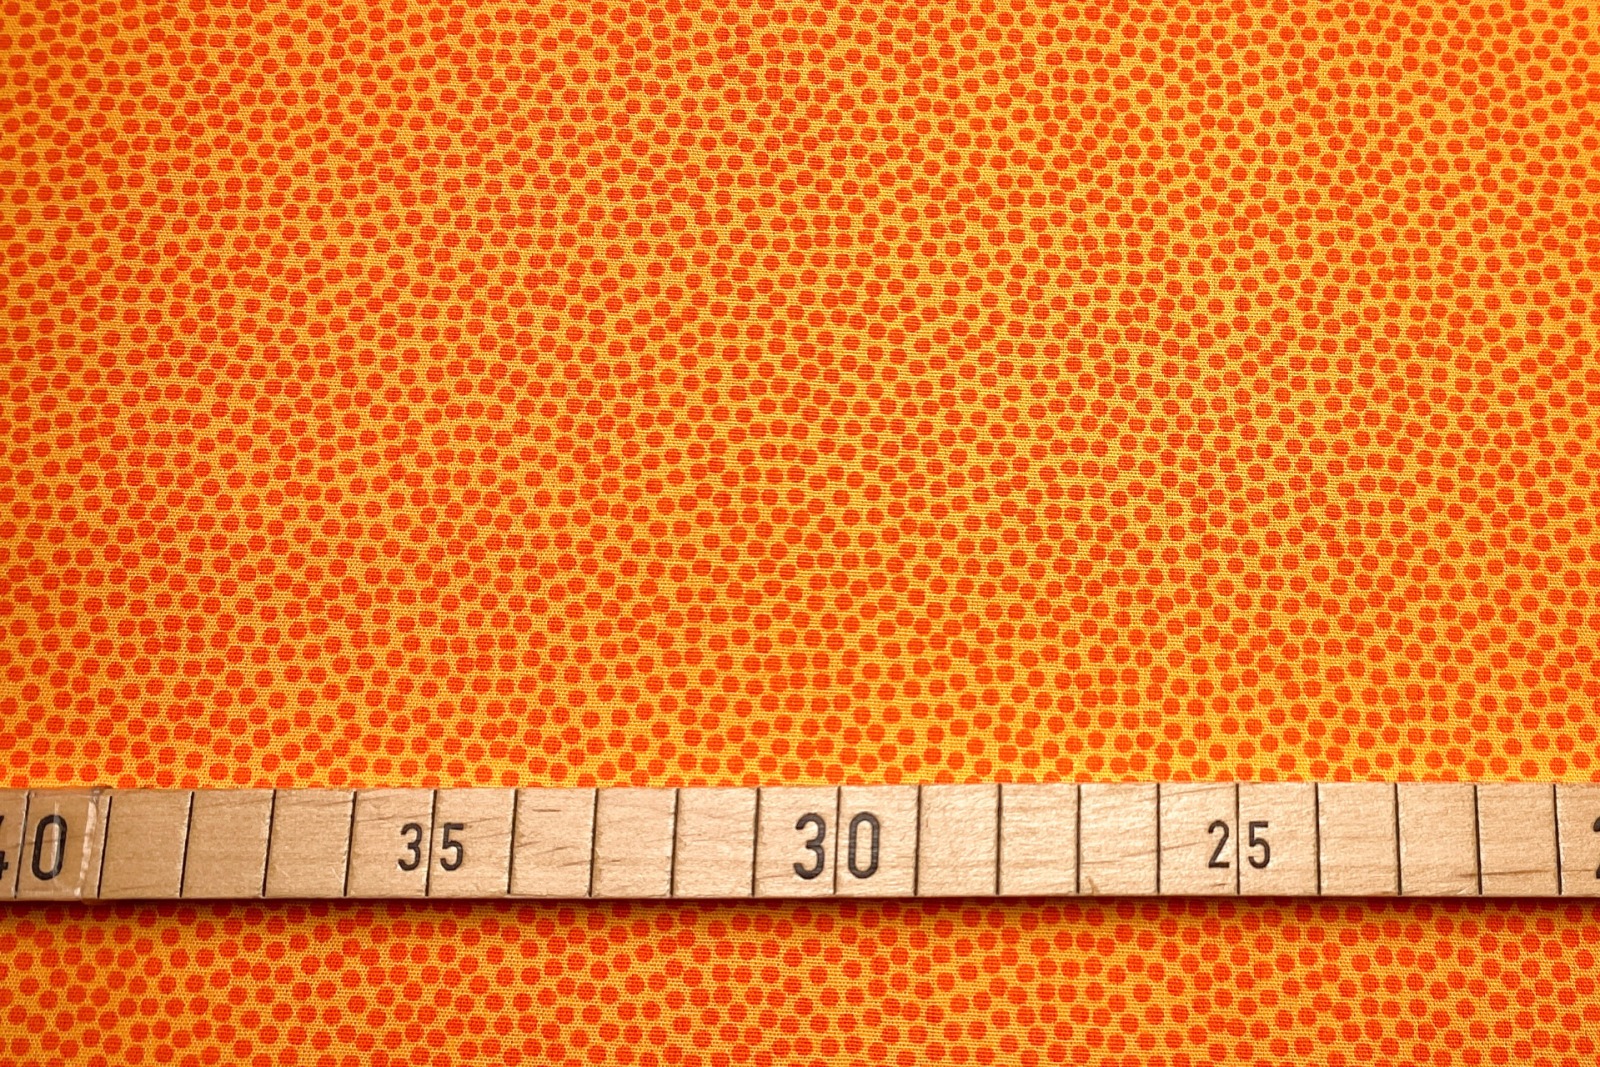 Baumwollwebware - unregelmäßige Punkte - orange - 100 Baumwolle - Dotty - Swafing